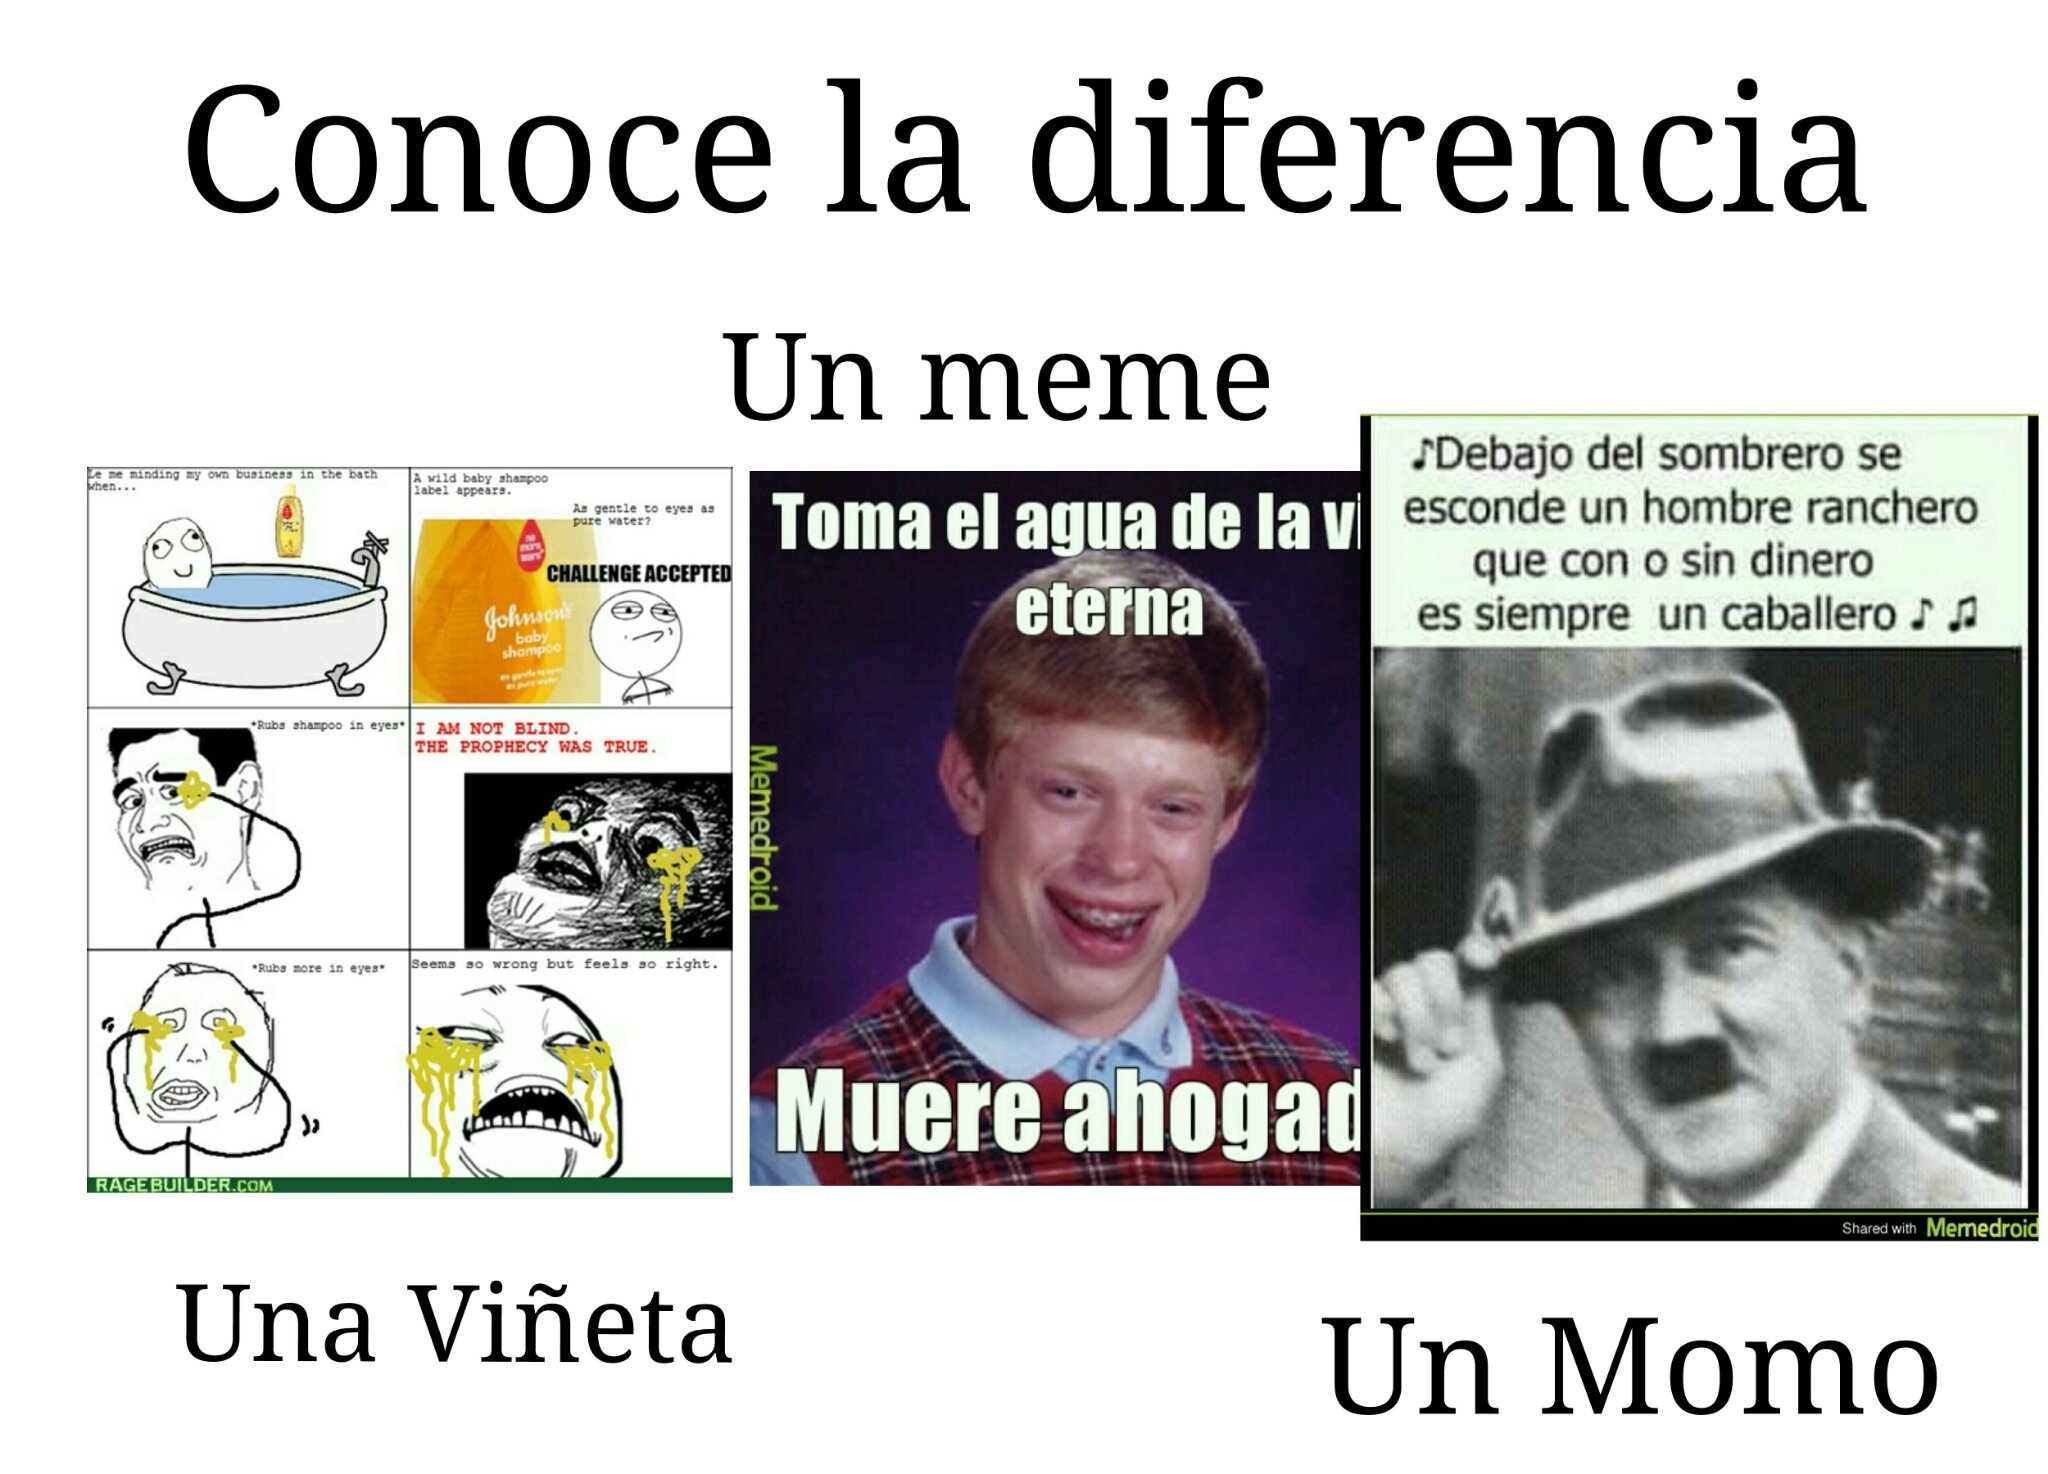 Diferencia - meme